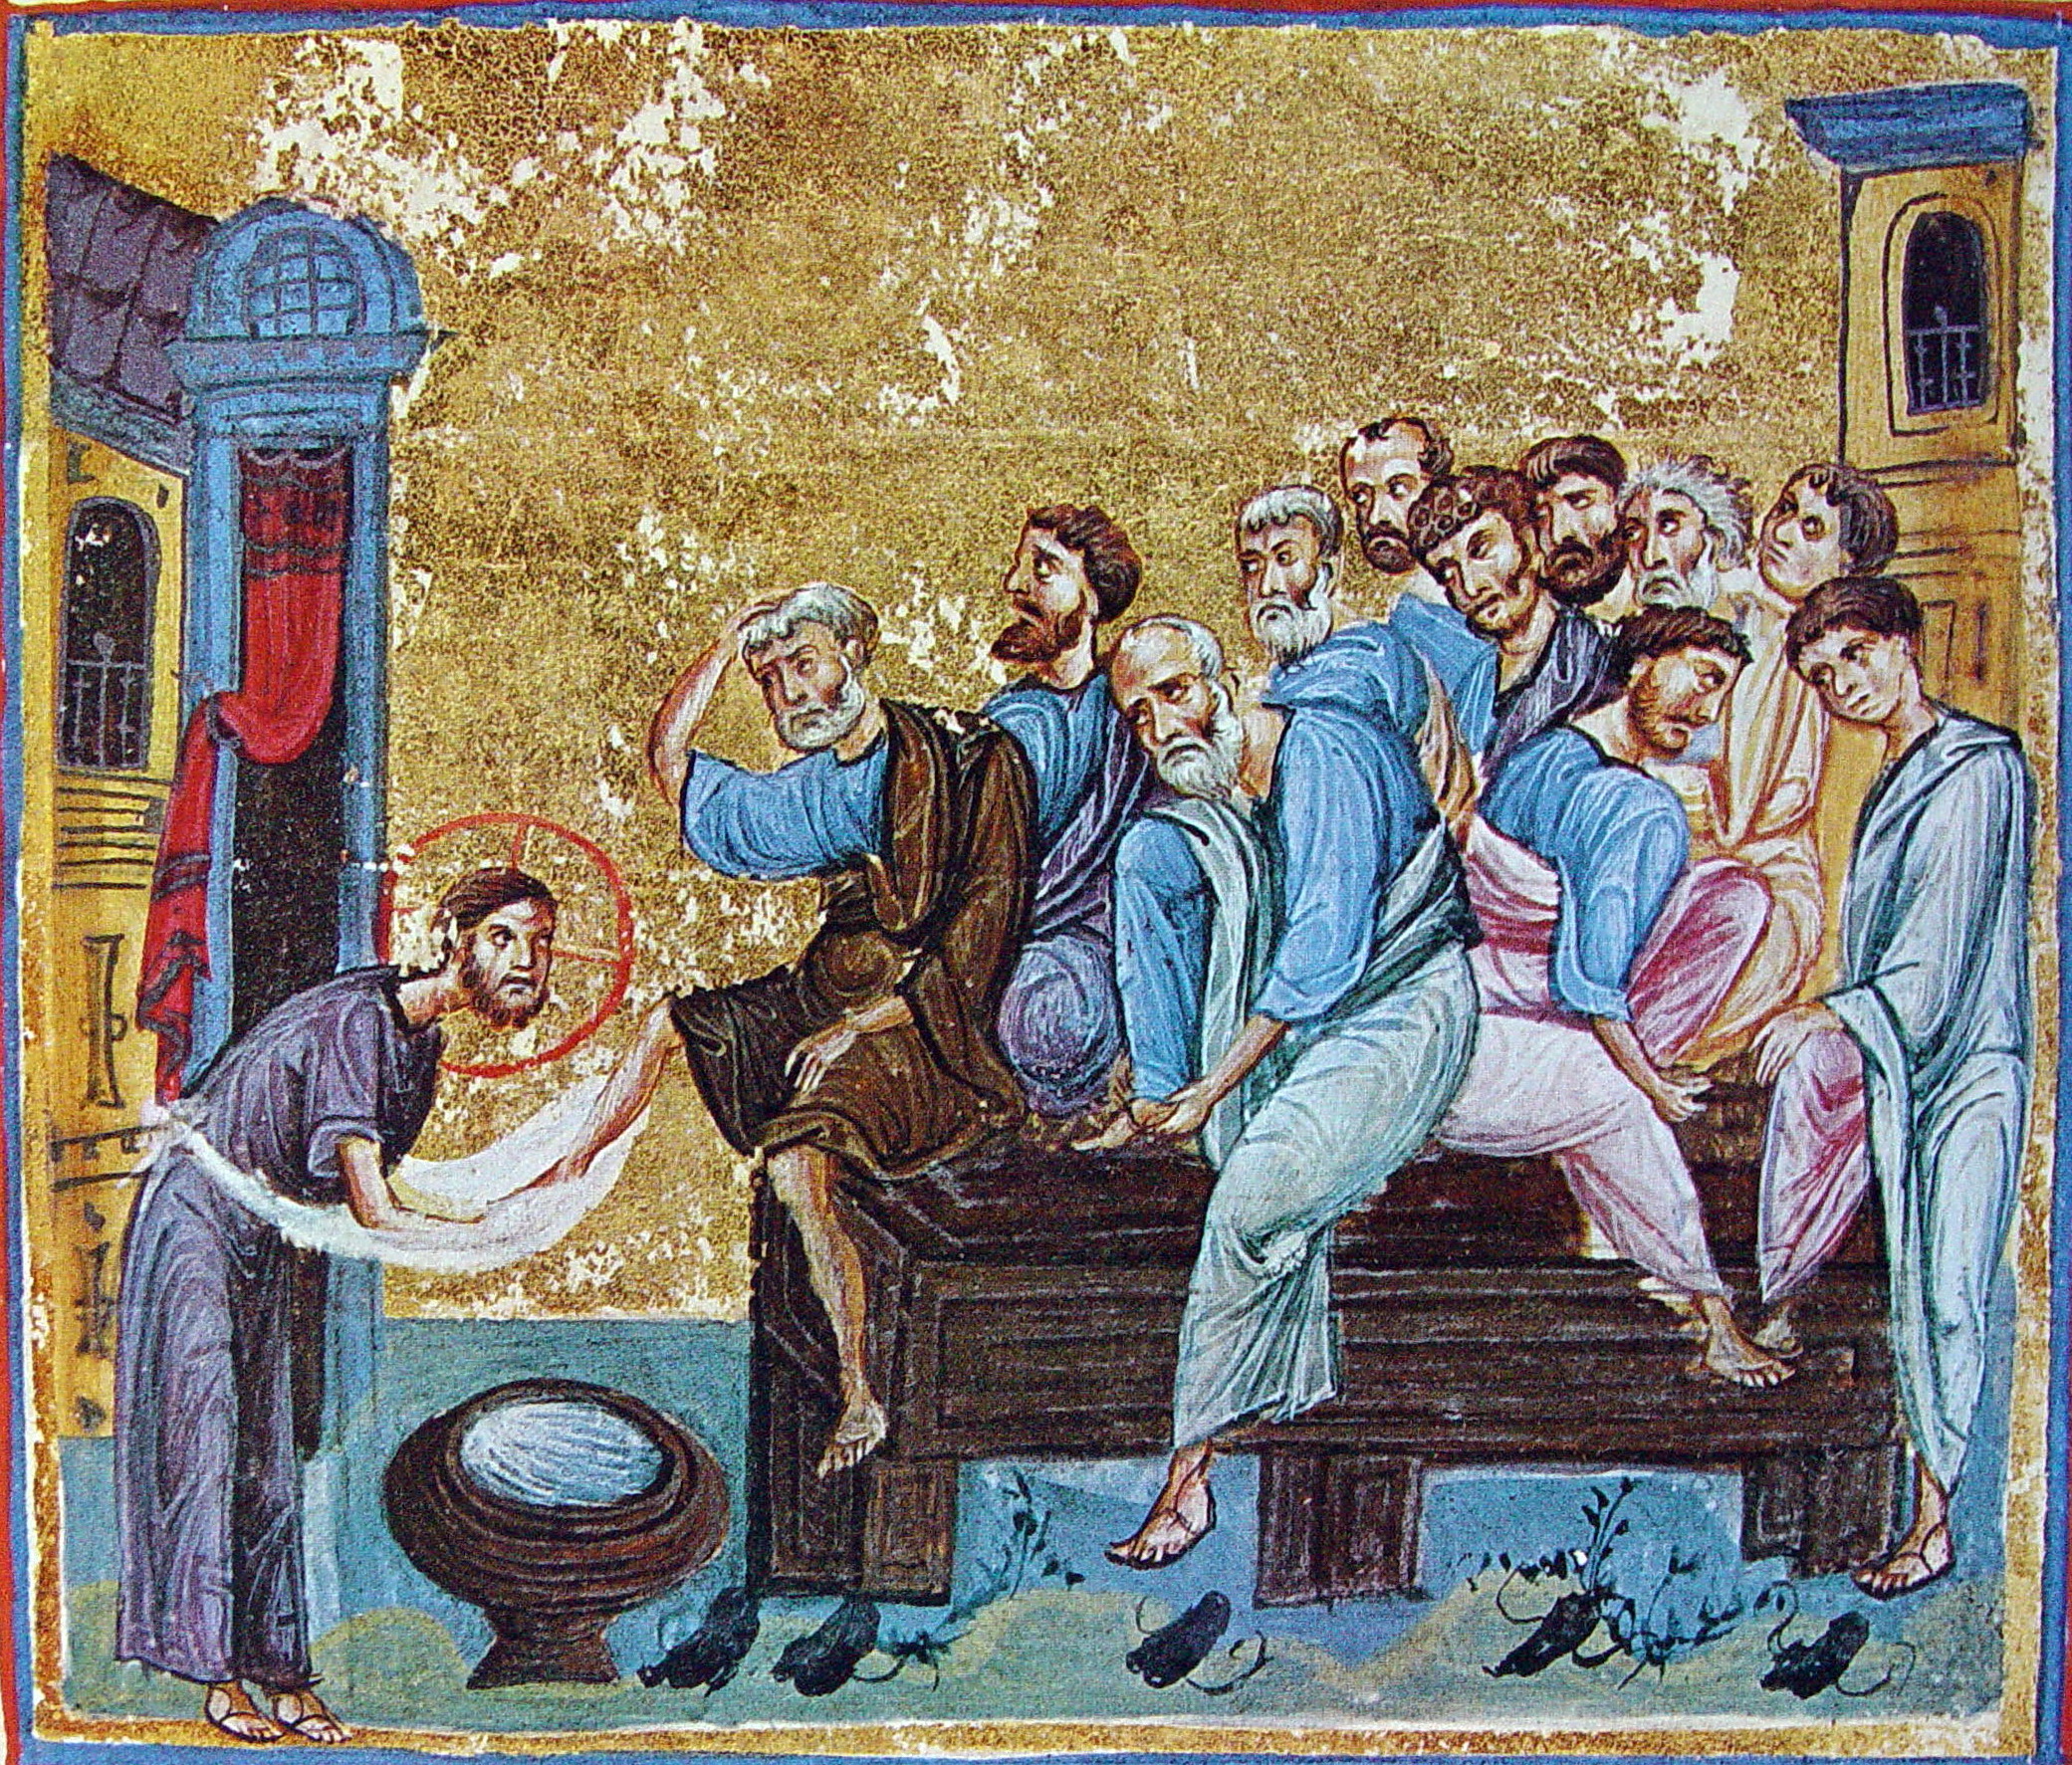 Христос омывает ноги своим ученикам.
Афон. XIV. Миниатюра Евангелия.